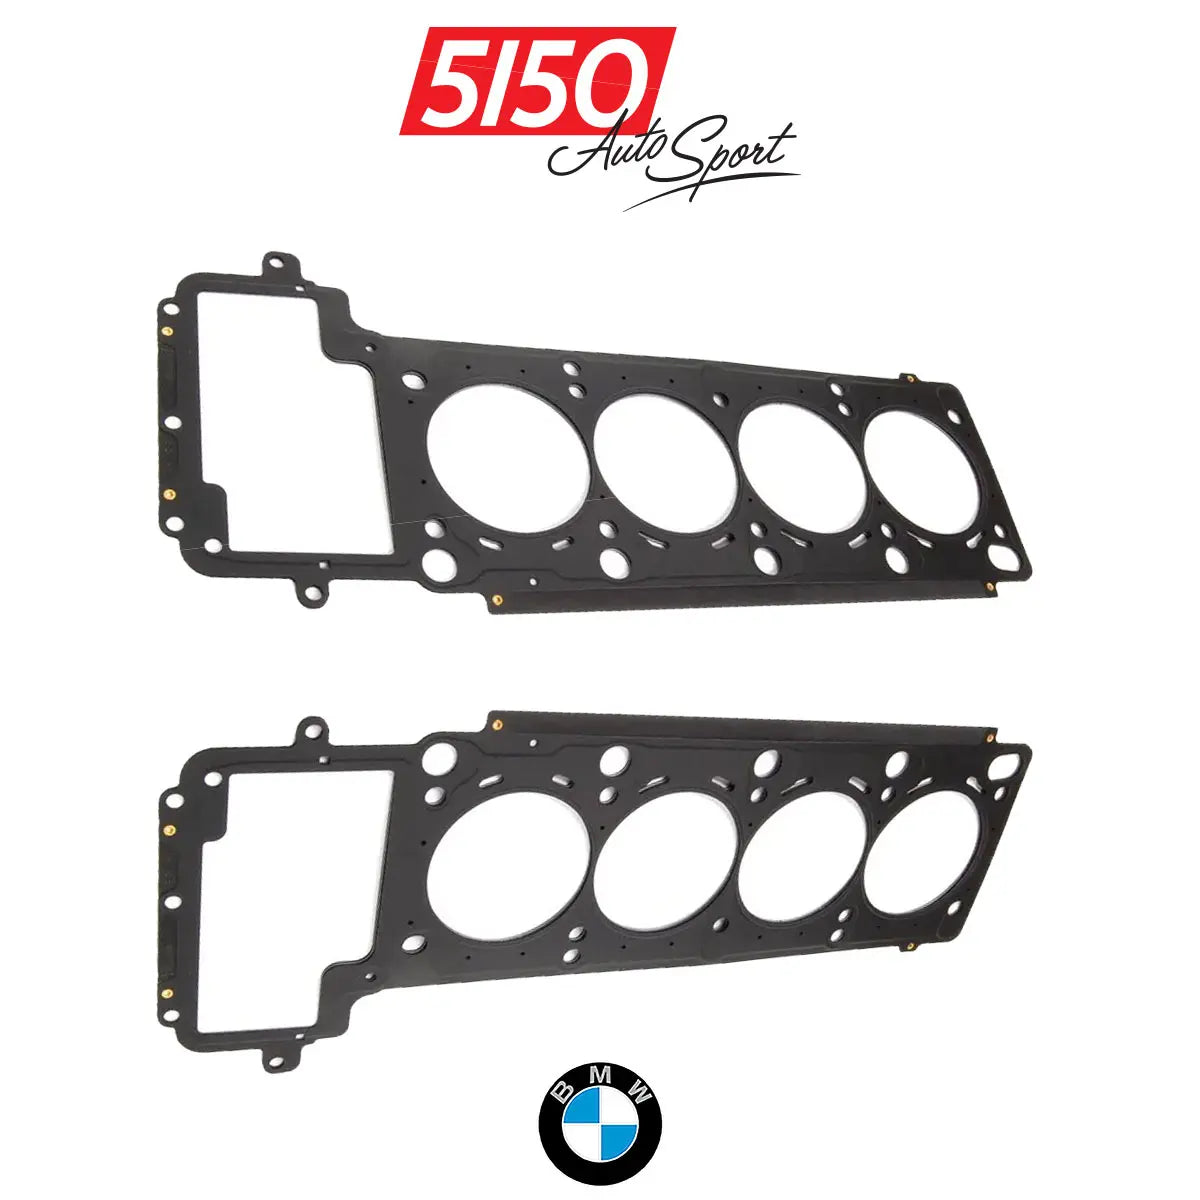 Genuine BMW OEM Head Gasket for S62 V8 Engines